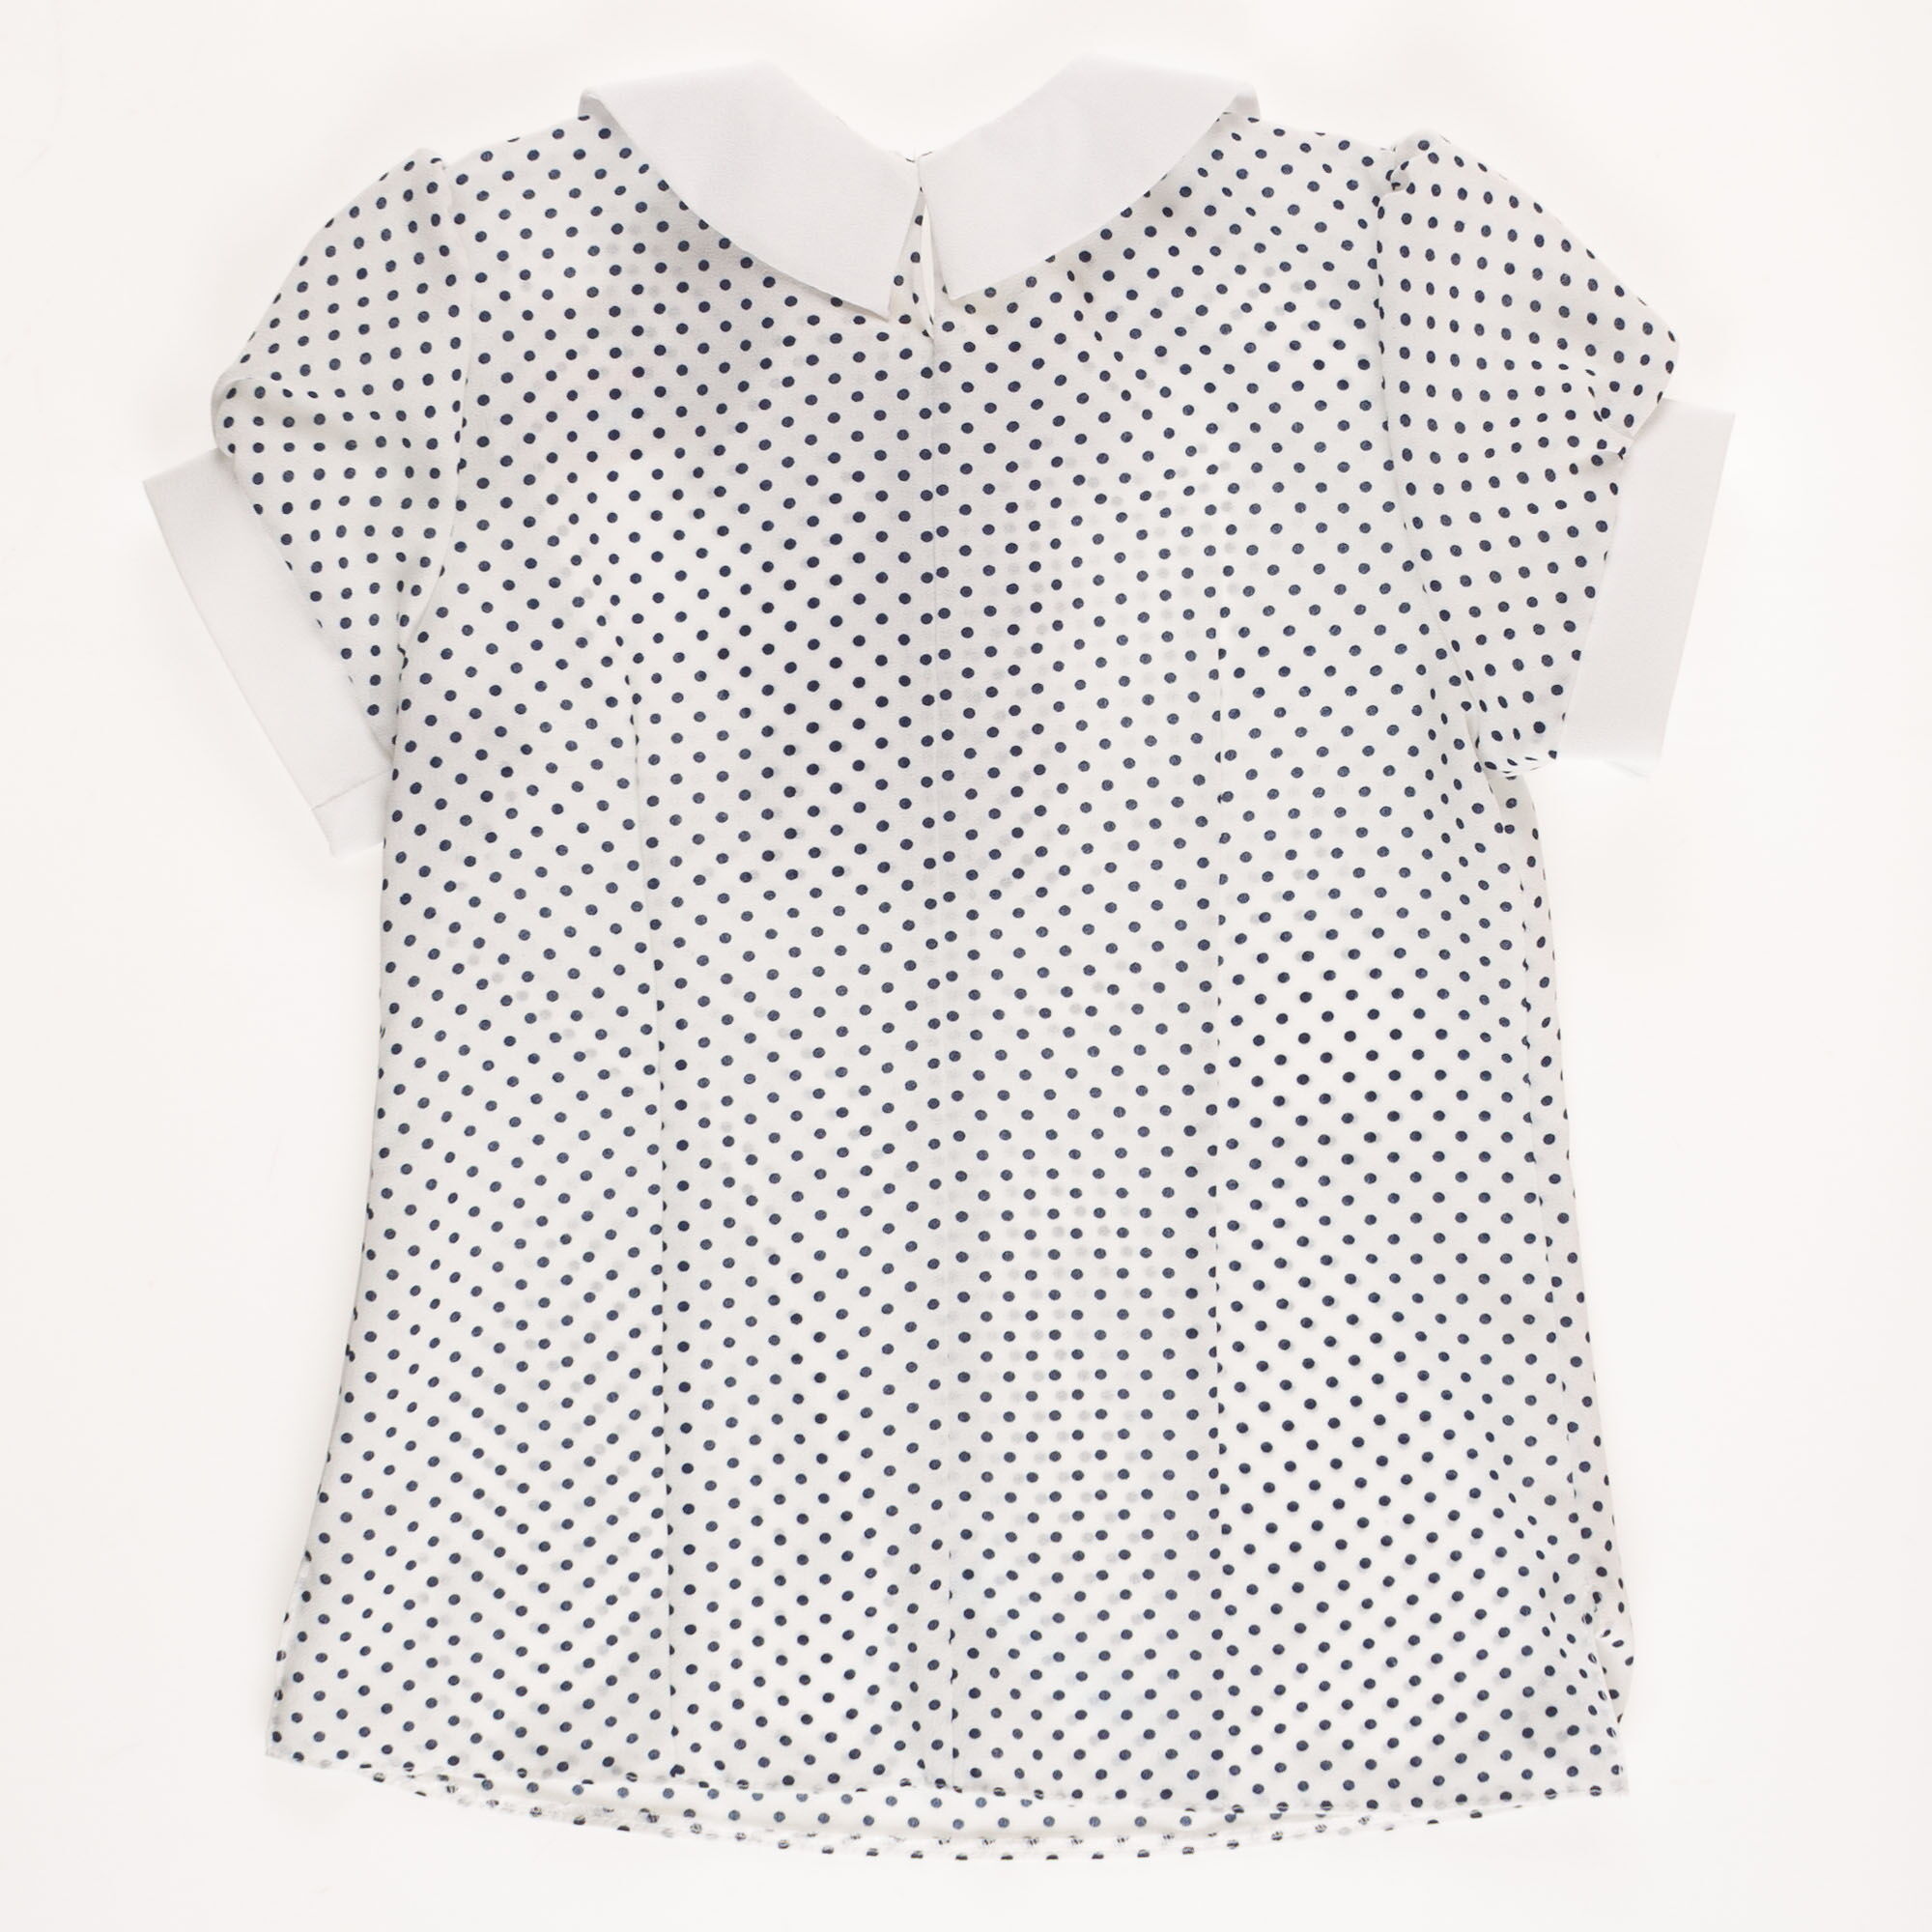 Блузка с коротким рукавом для девочки Польша Горох белая 03914 - размеры